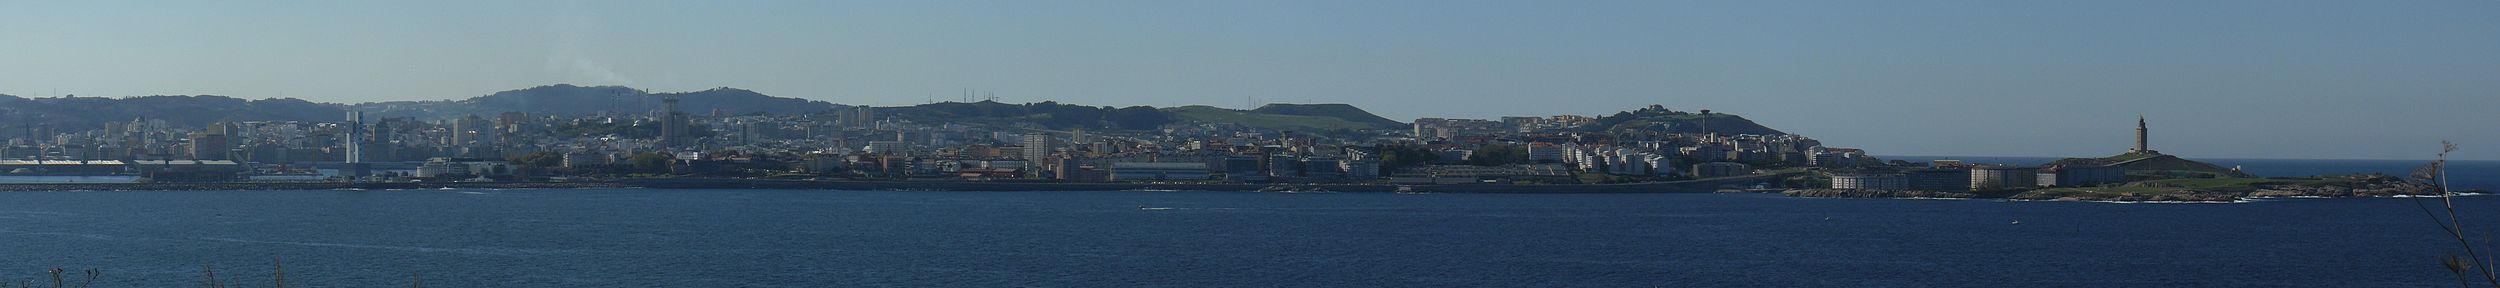 Panorama von A Coruña, aufgenommen vom Leuchtturm von Mera. Blick vom Castillo de San Anton bis zum Herkulesturm